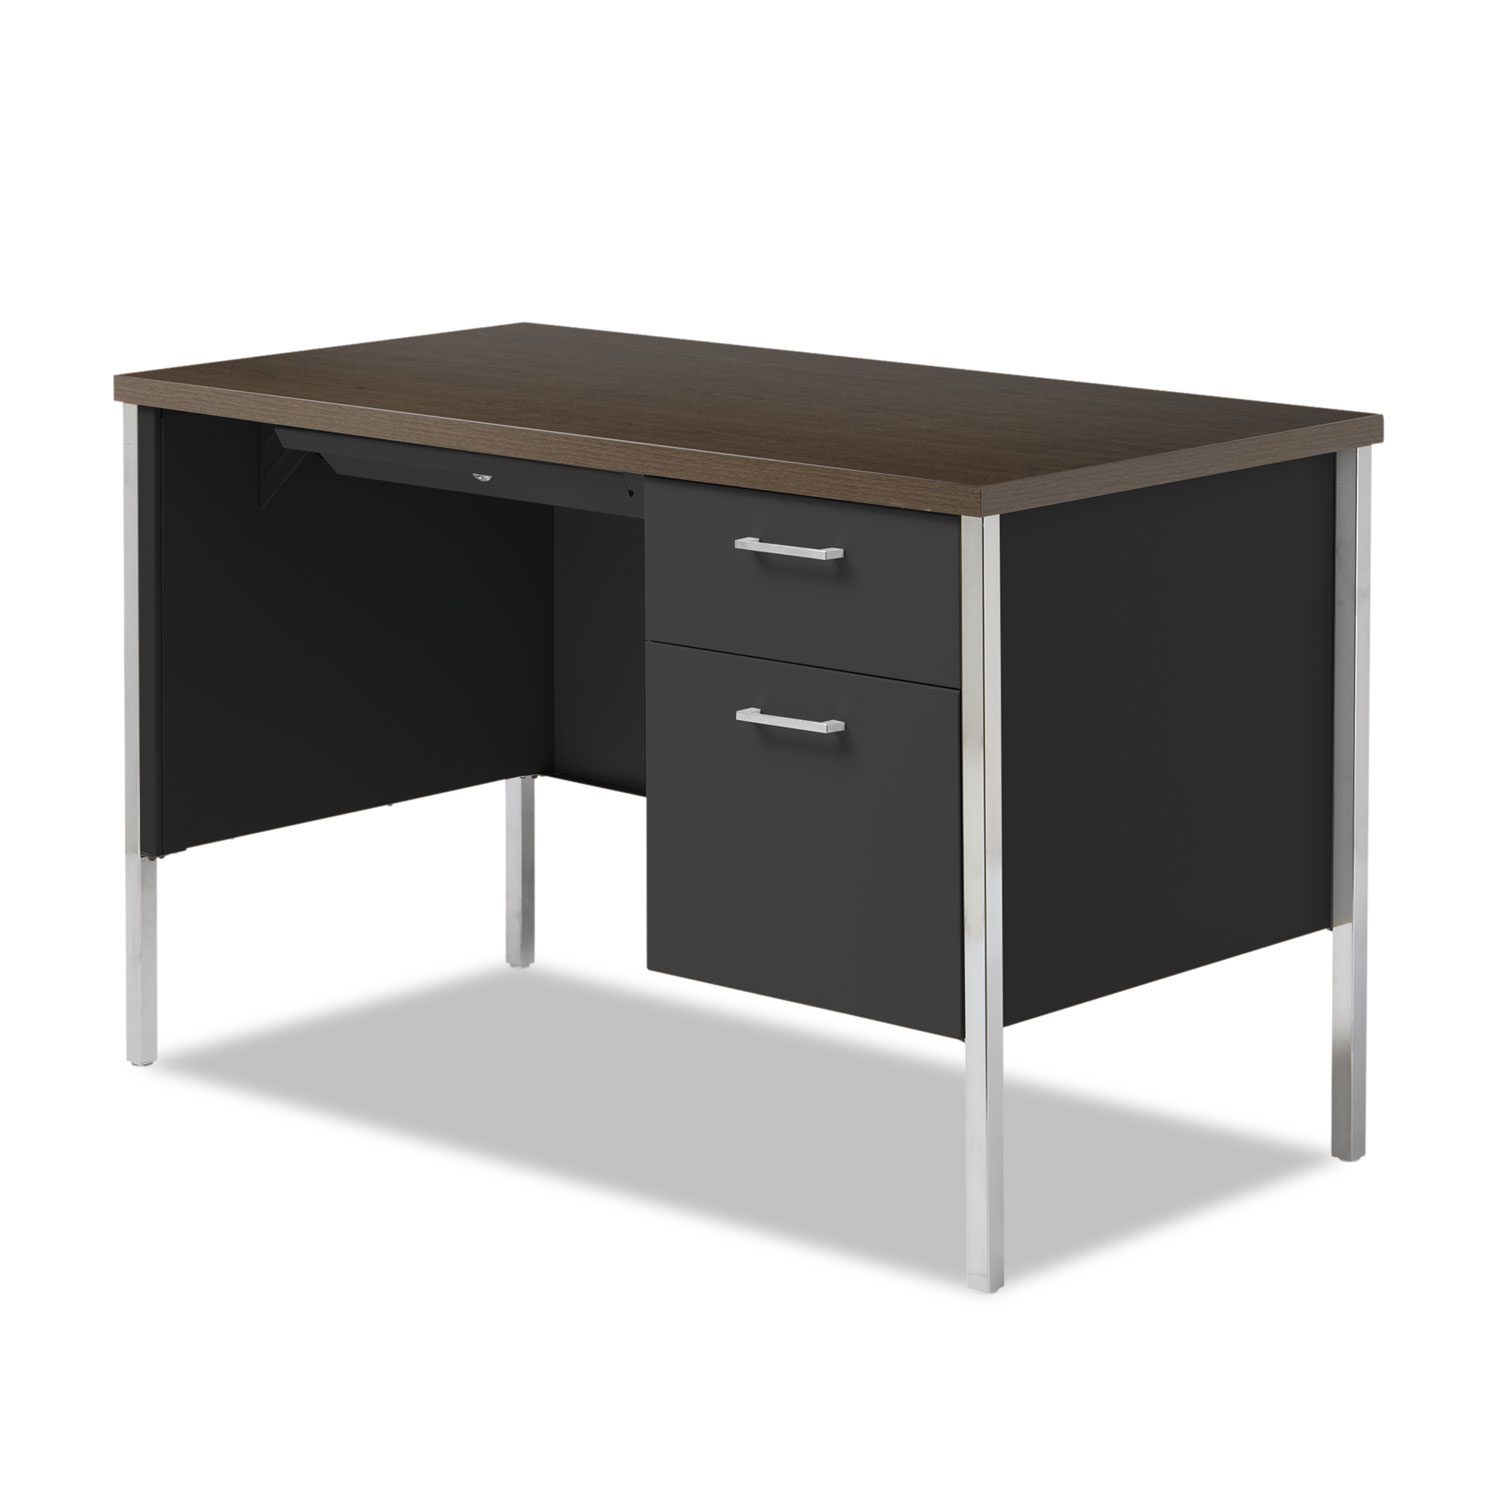 Single Pedestal Steel Desk, Metal Desk, 45-1/4w x 24d x 29-1/2h, Walnut/Black